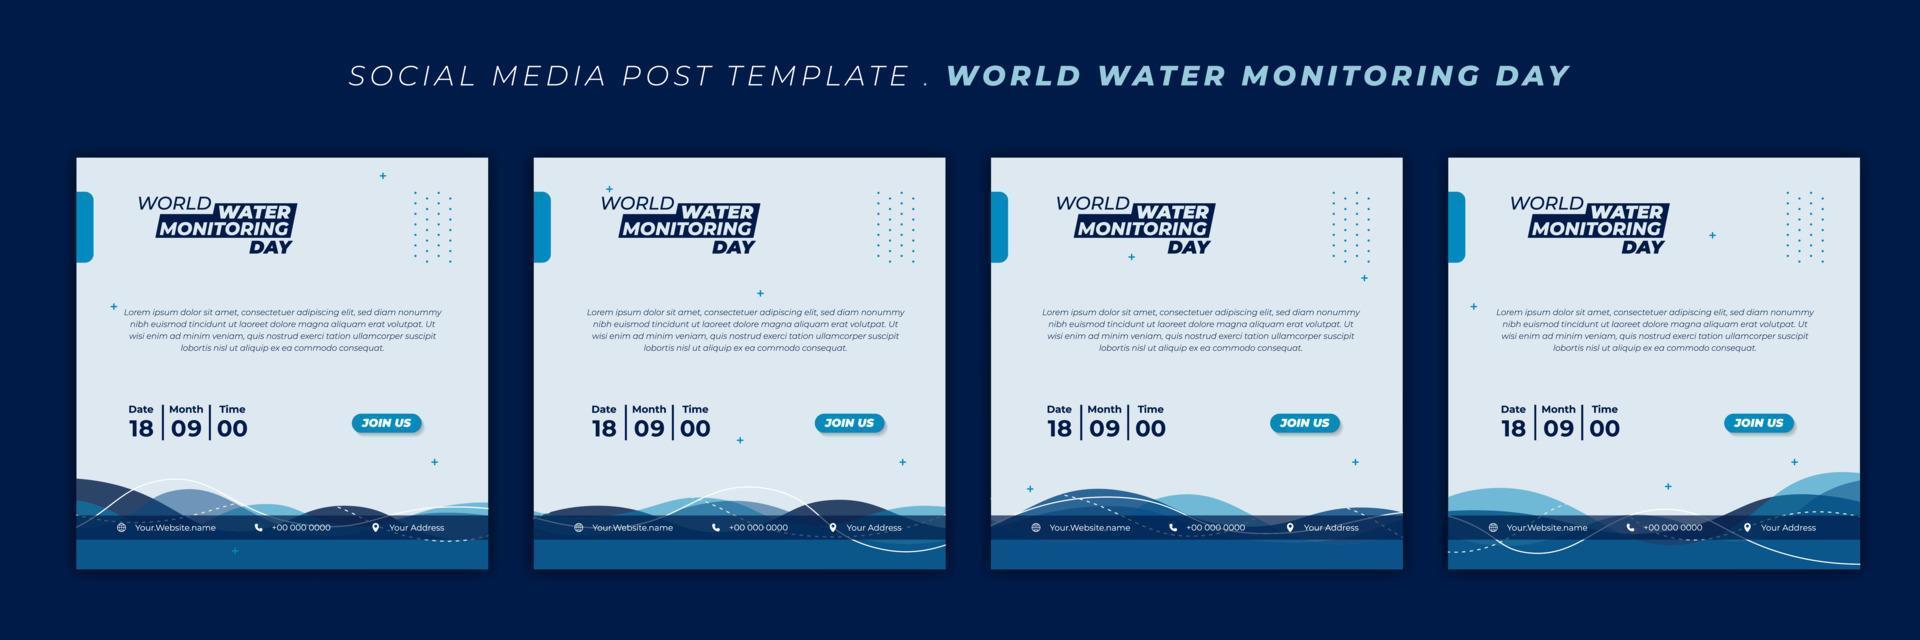 wereldwaterbewakingsdag met wuivend waterontwerp als achtergrond. set van sociale media-sjabloon met blauw en wit ontwerp. vector